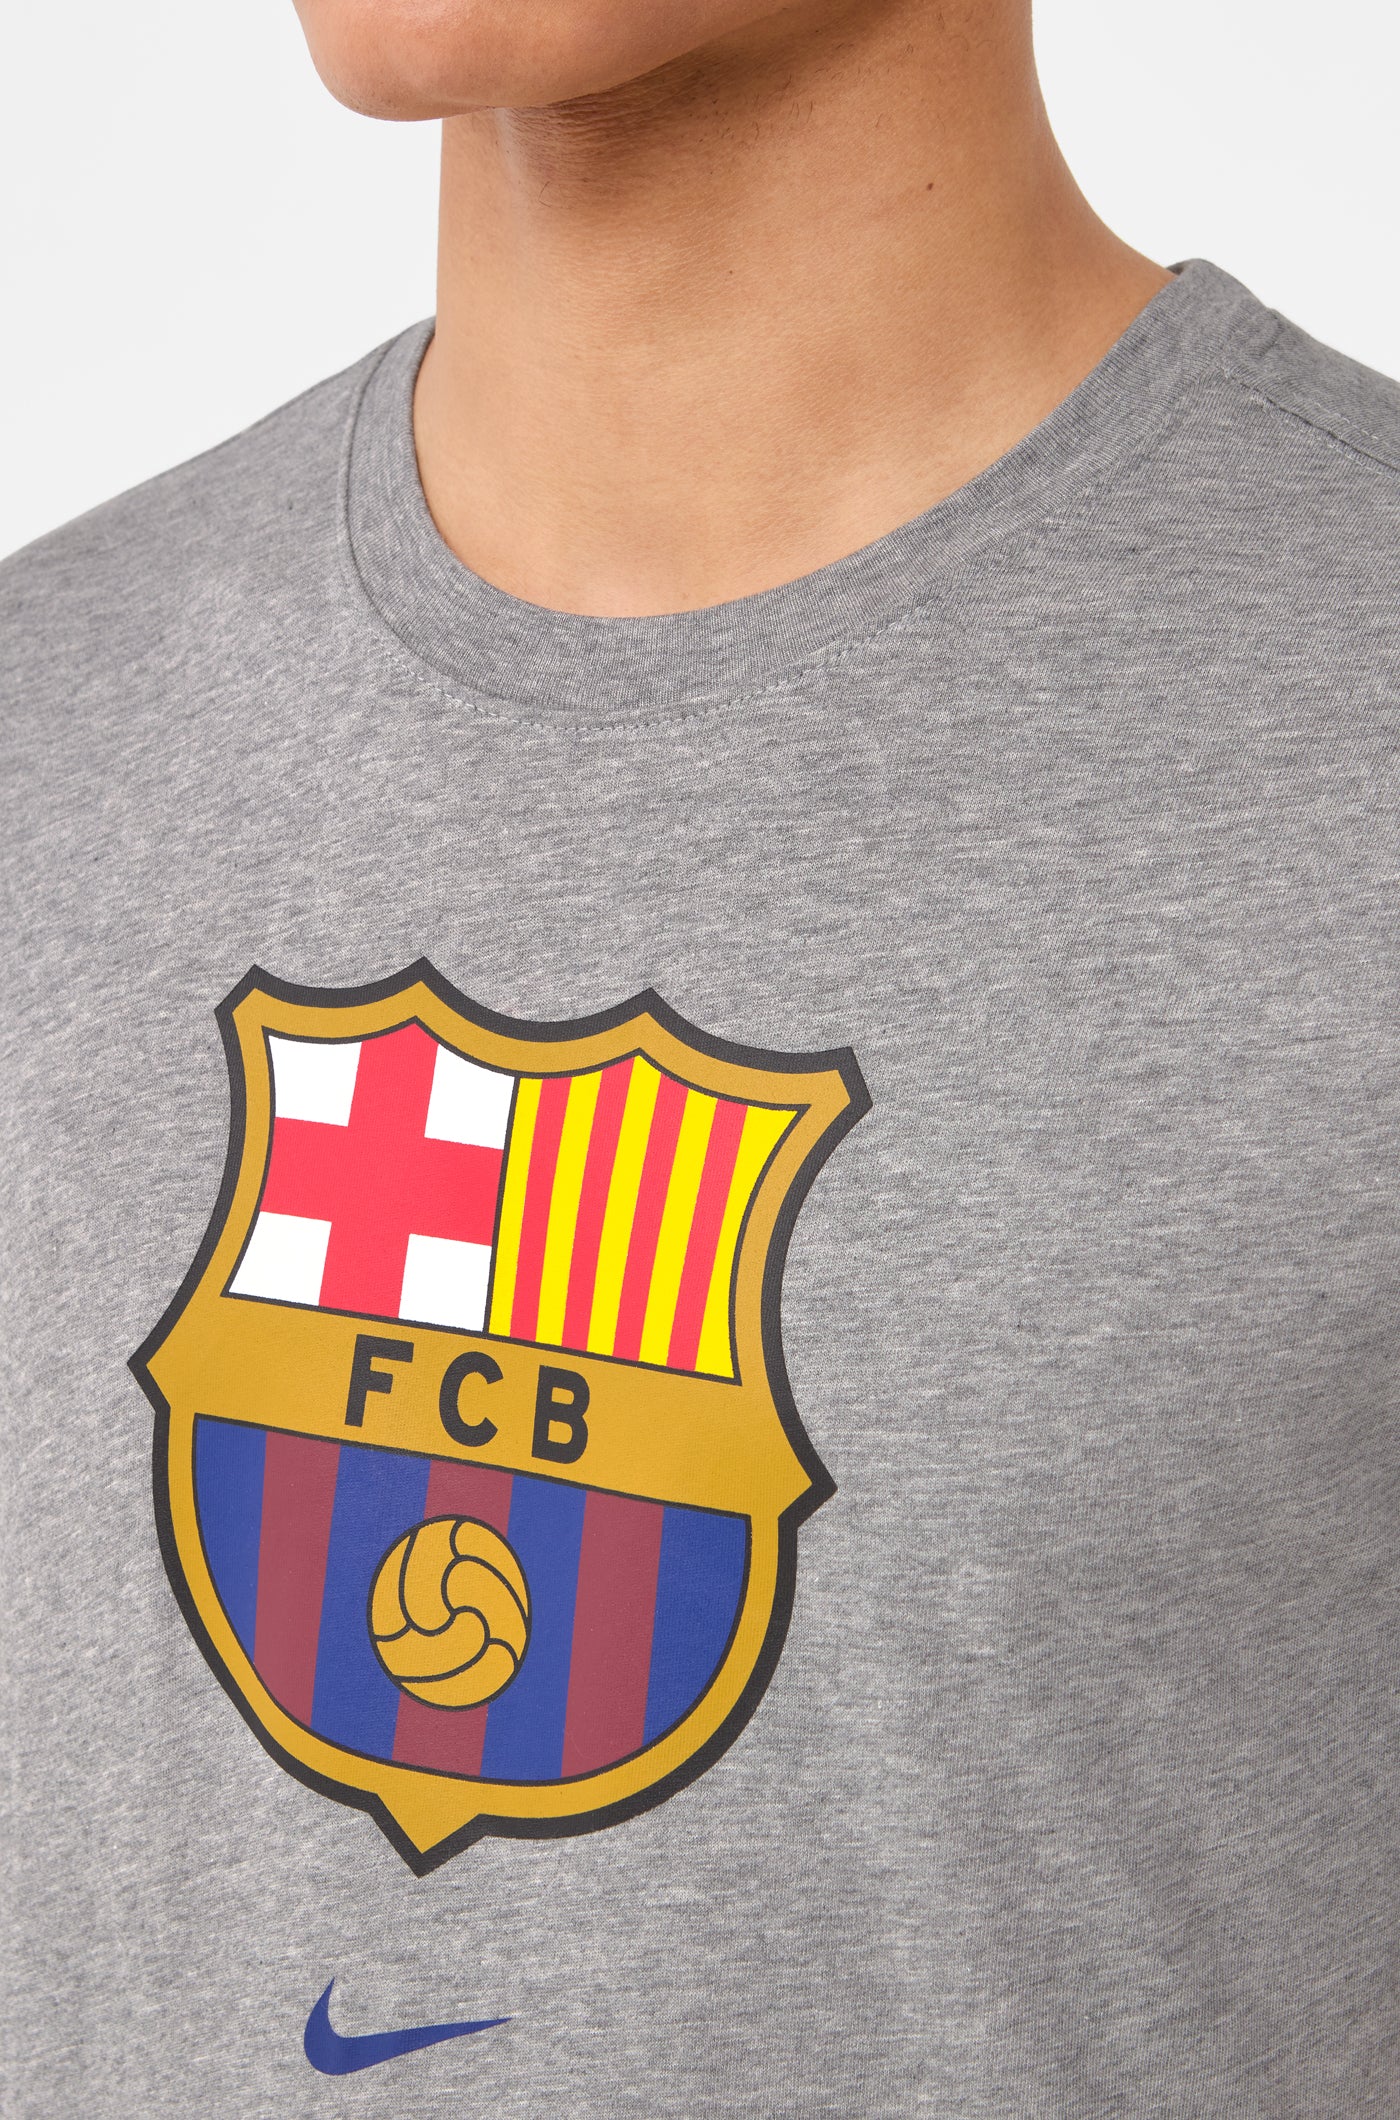 Camiseta gris escudo Barça Nike